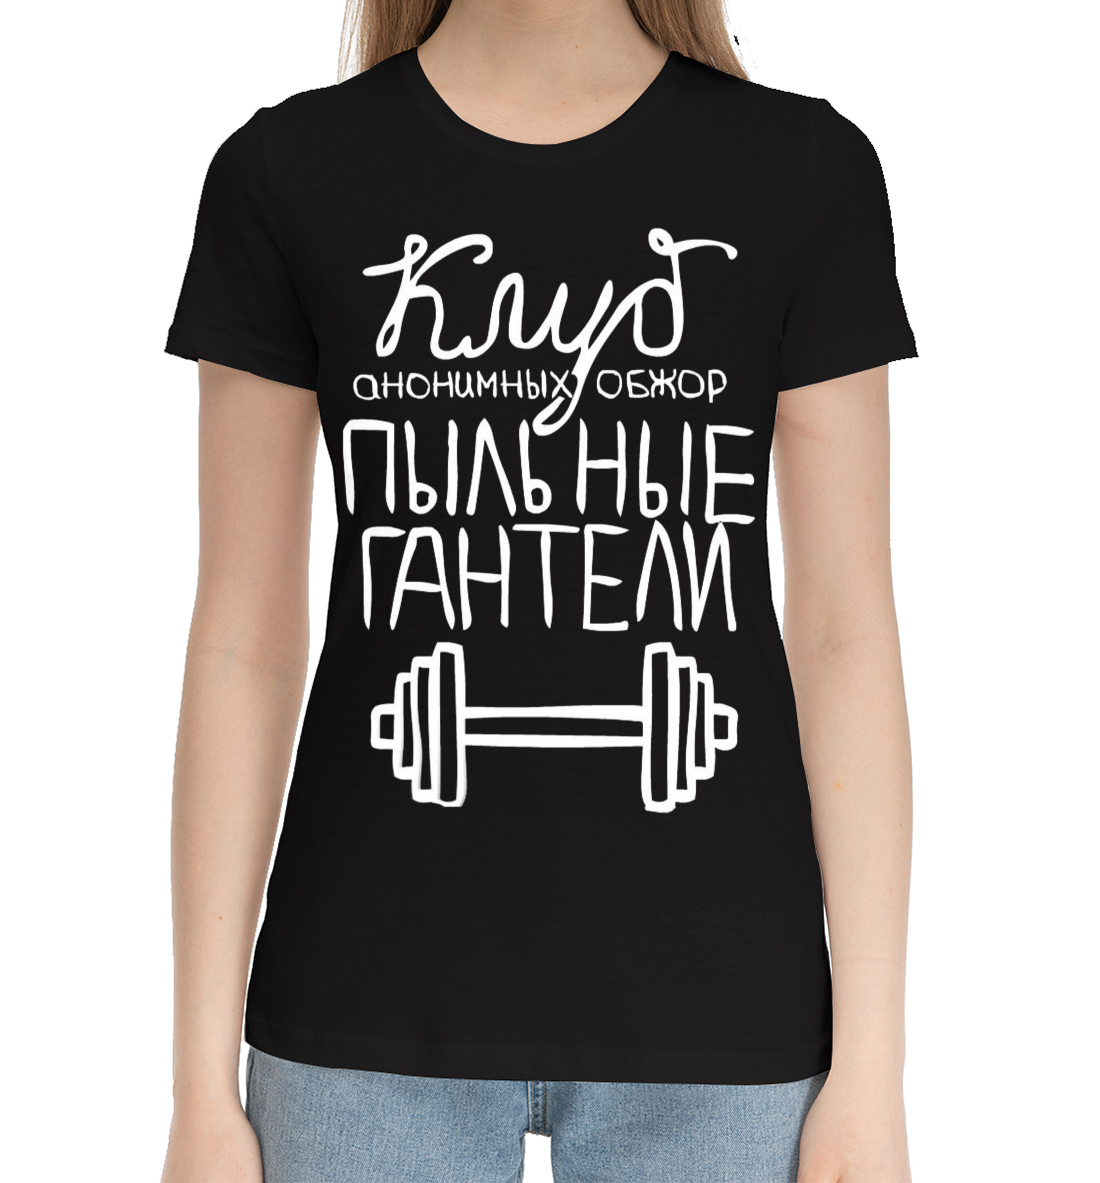 Женская Хлопковая футболка с надписью Клуб анонимных обжор, артикул FIT-158461-hfu-1mp